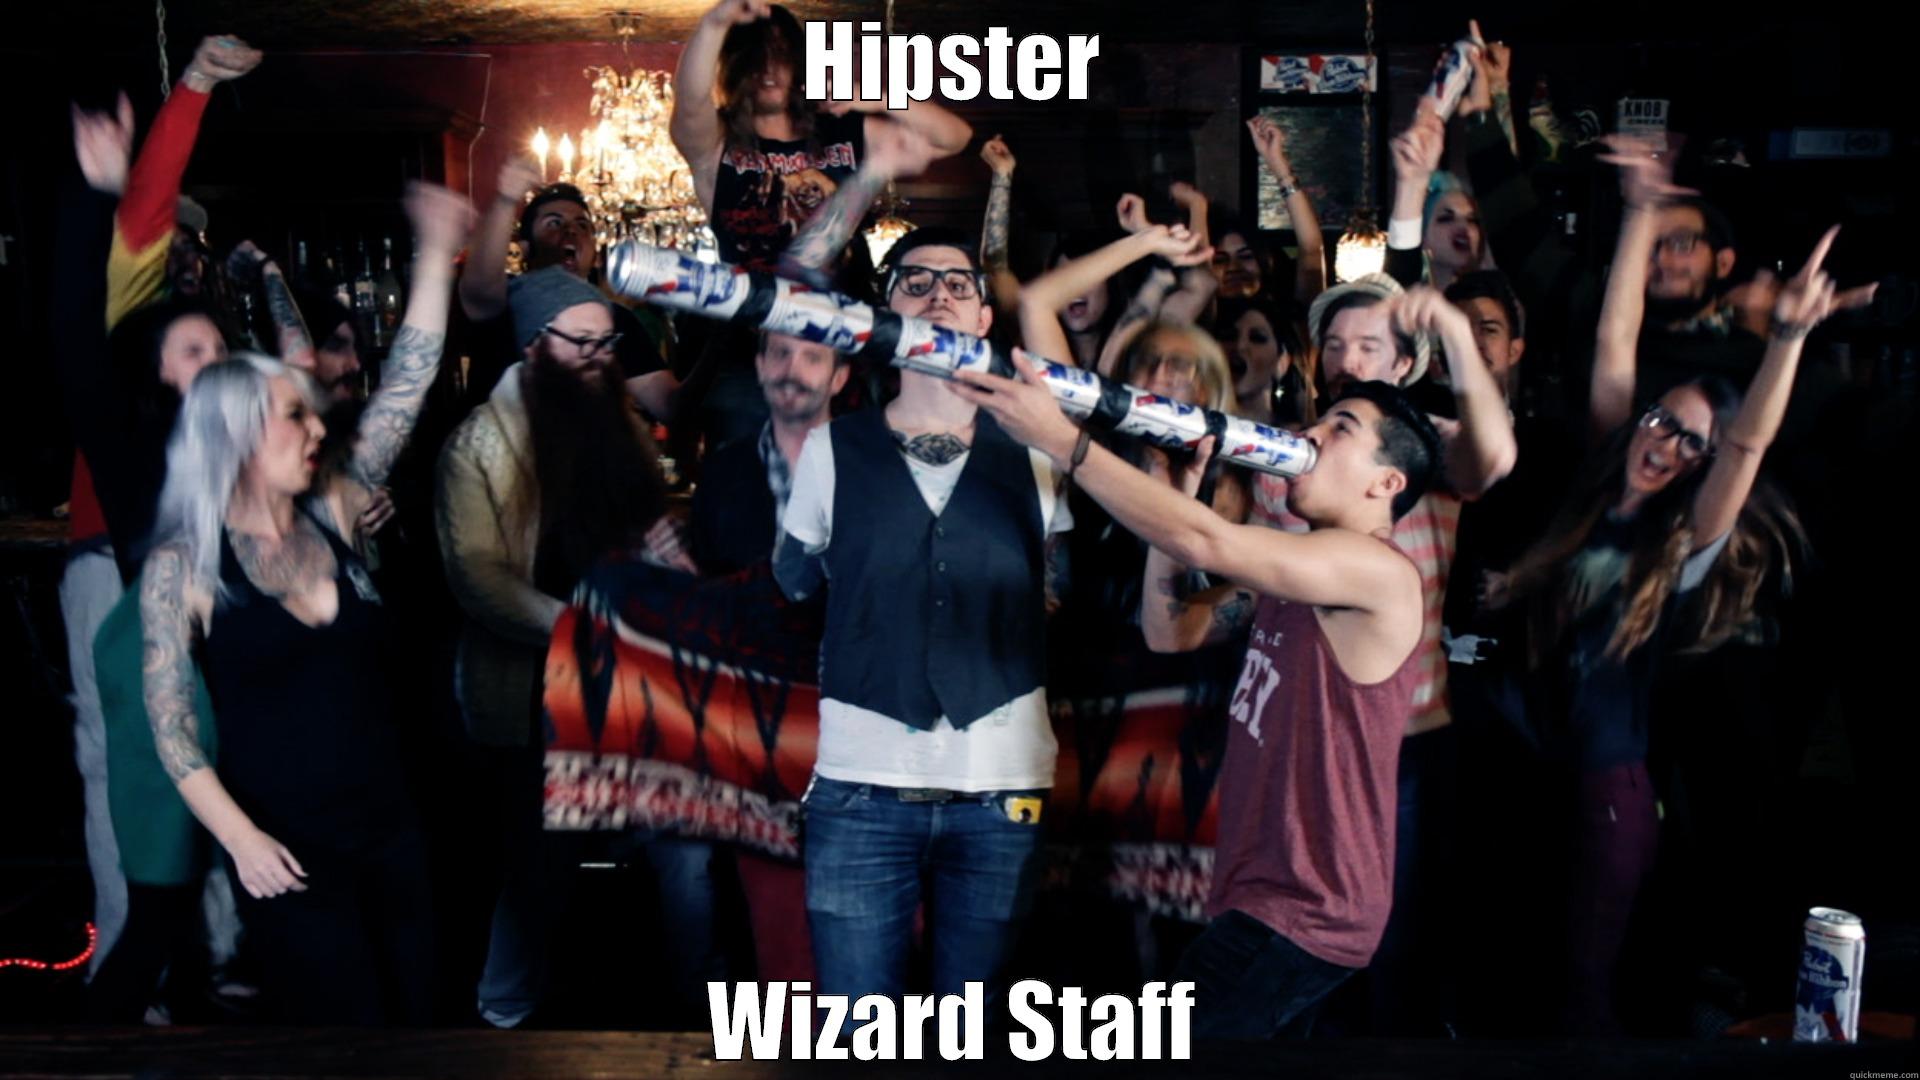 Wizard Staff - HIPSTER WIZARD STAFF Misc